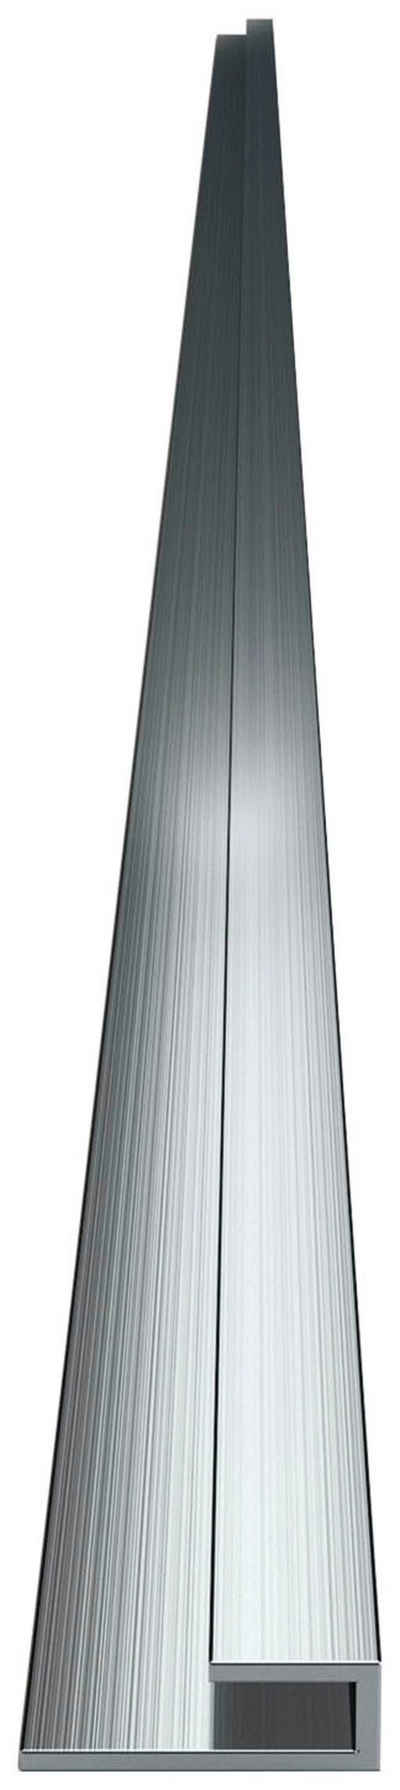 Sanotechnik Abschlussprofil Sanowall, 255 cm